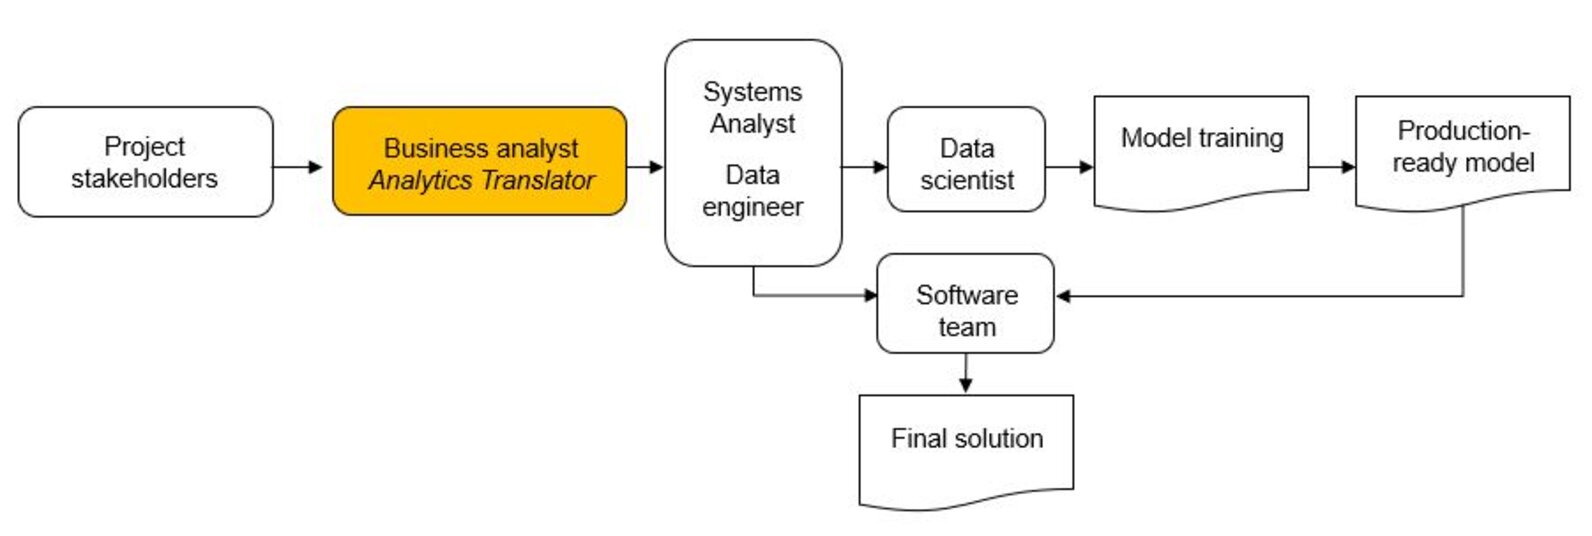 Beispiel für die Positionierung von Business-Analytics-Translators im Workflow von Data-Science-Projekten, wie sie häufig in Unternehmen anzutreffen sind.